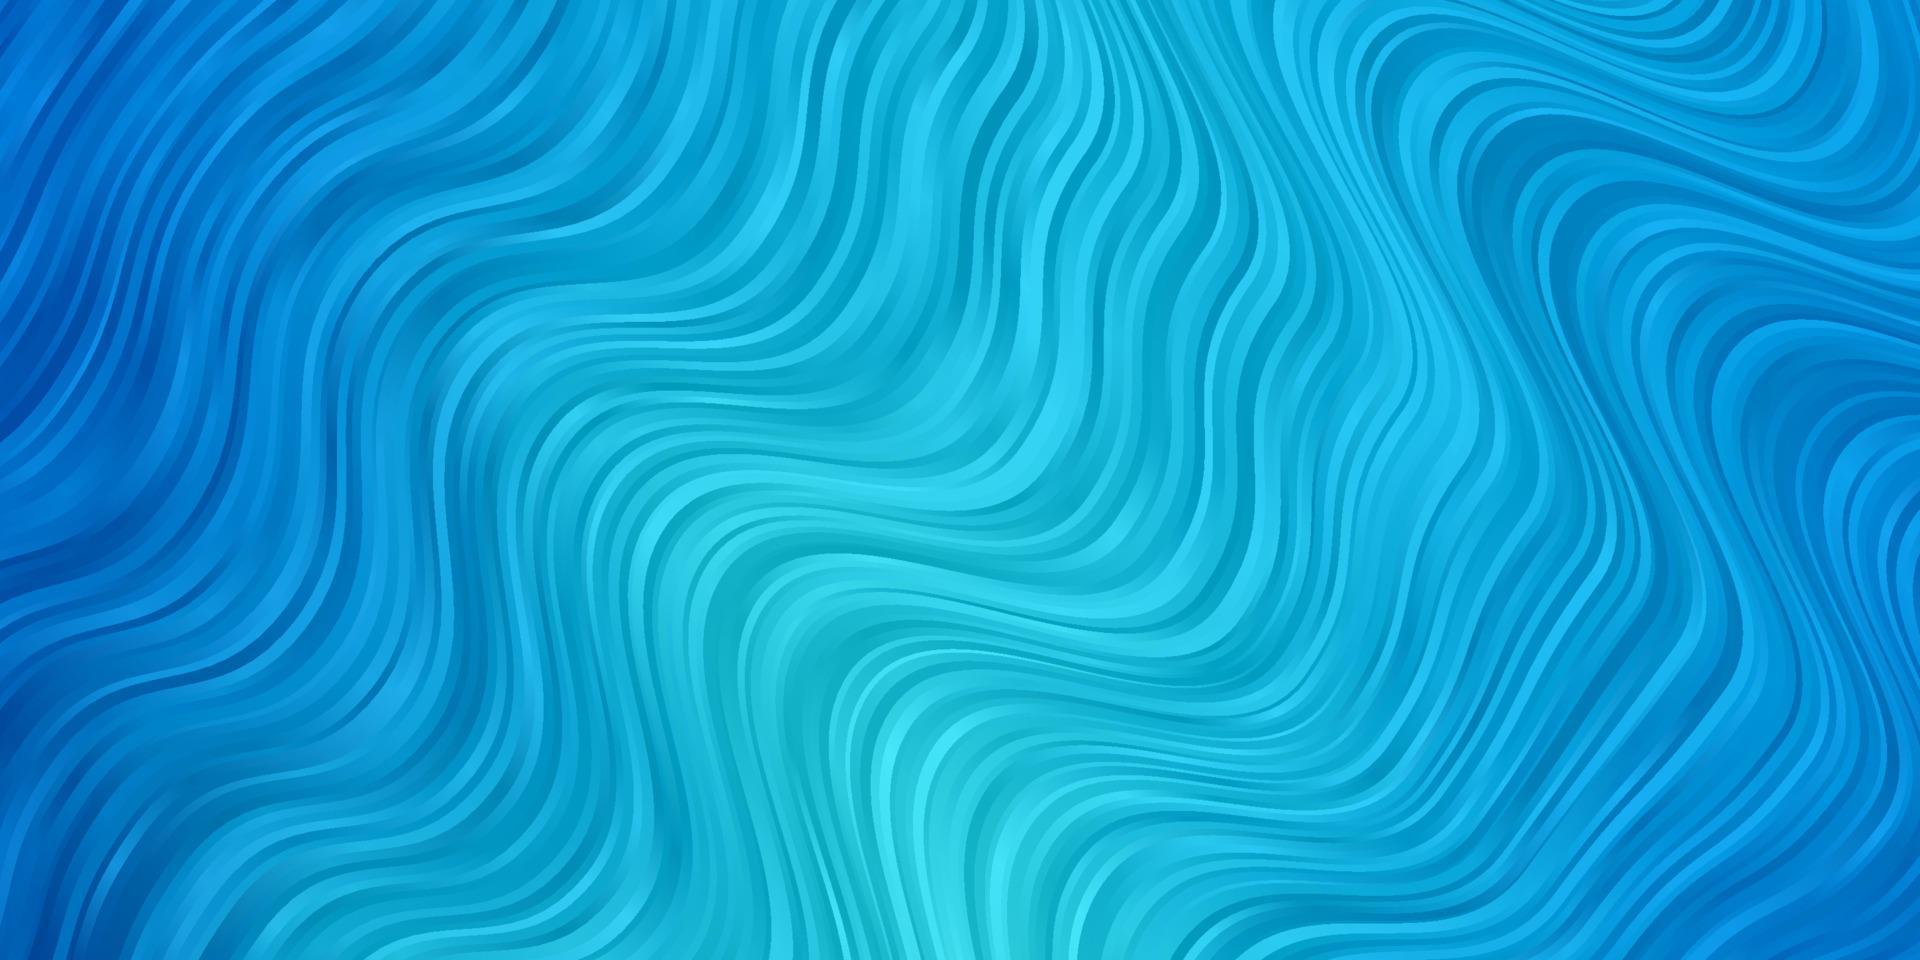 patrón de vector azul claro con líneas torcidas.